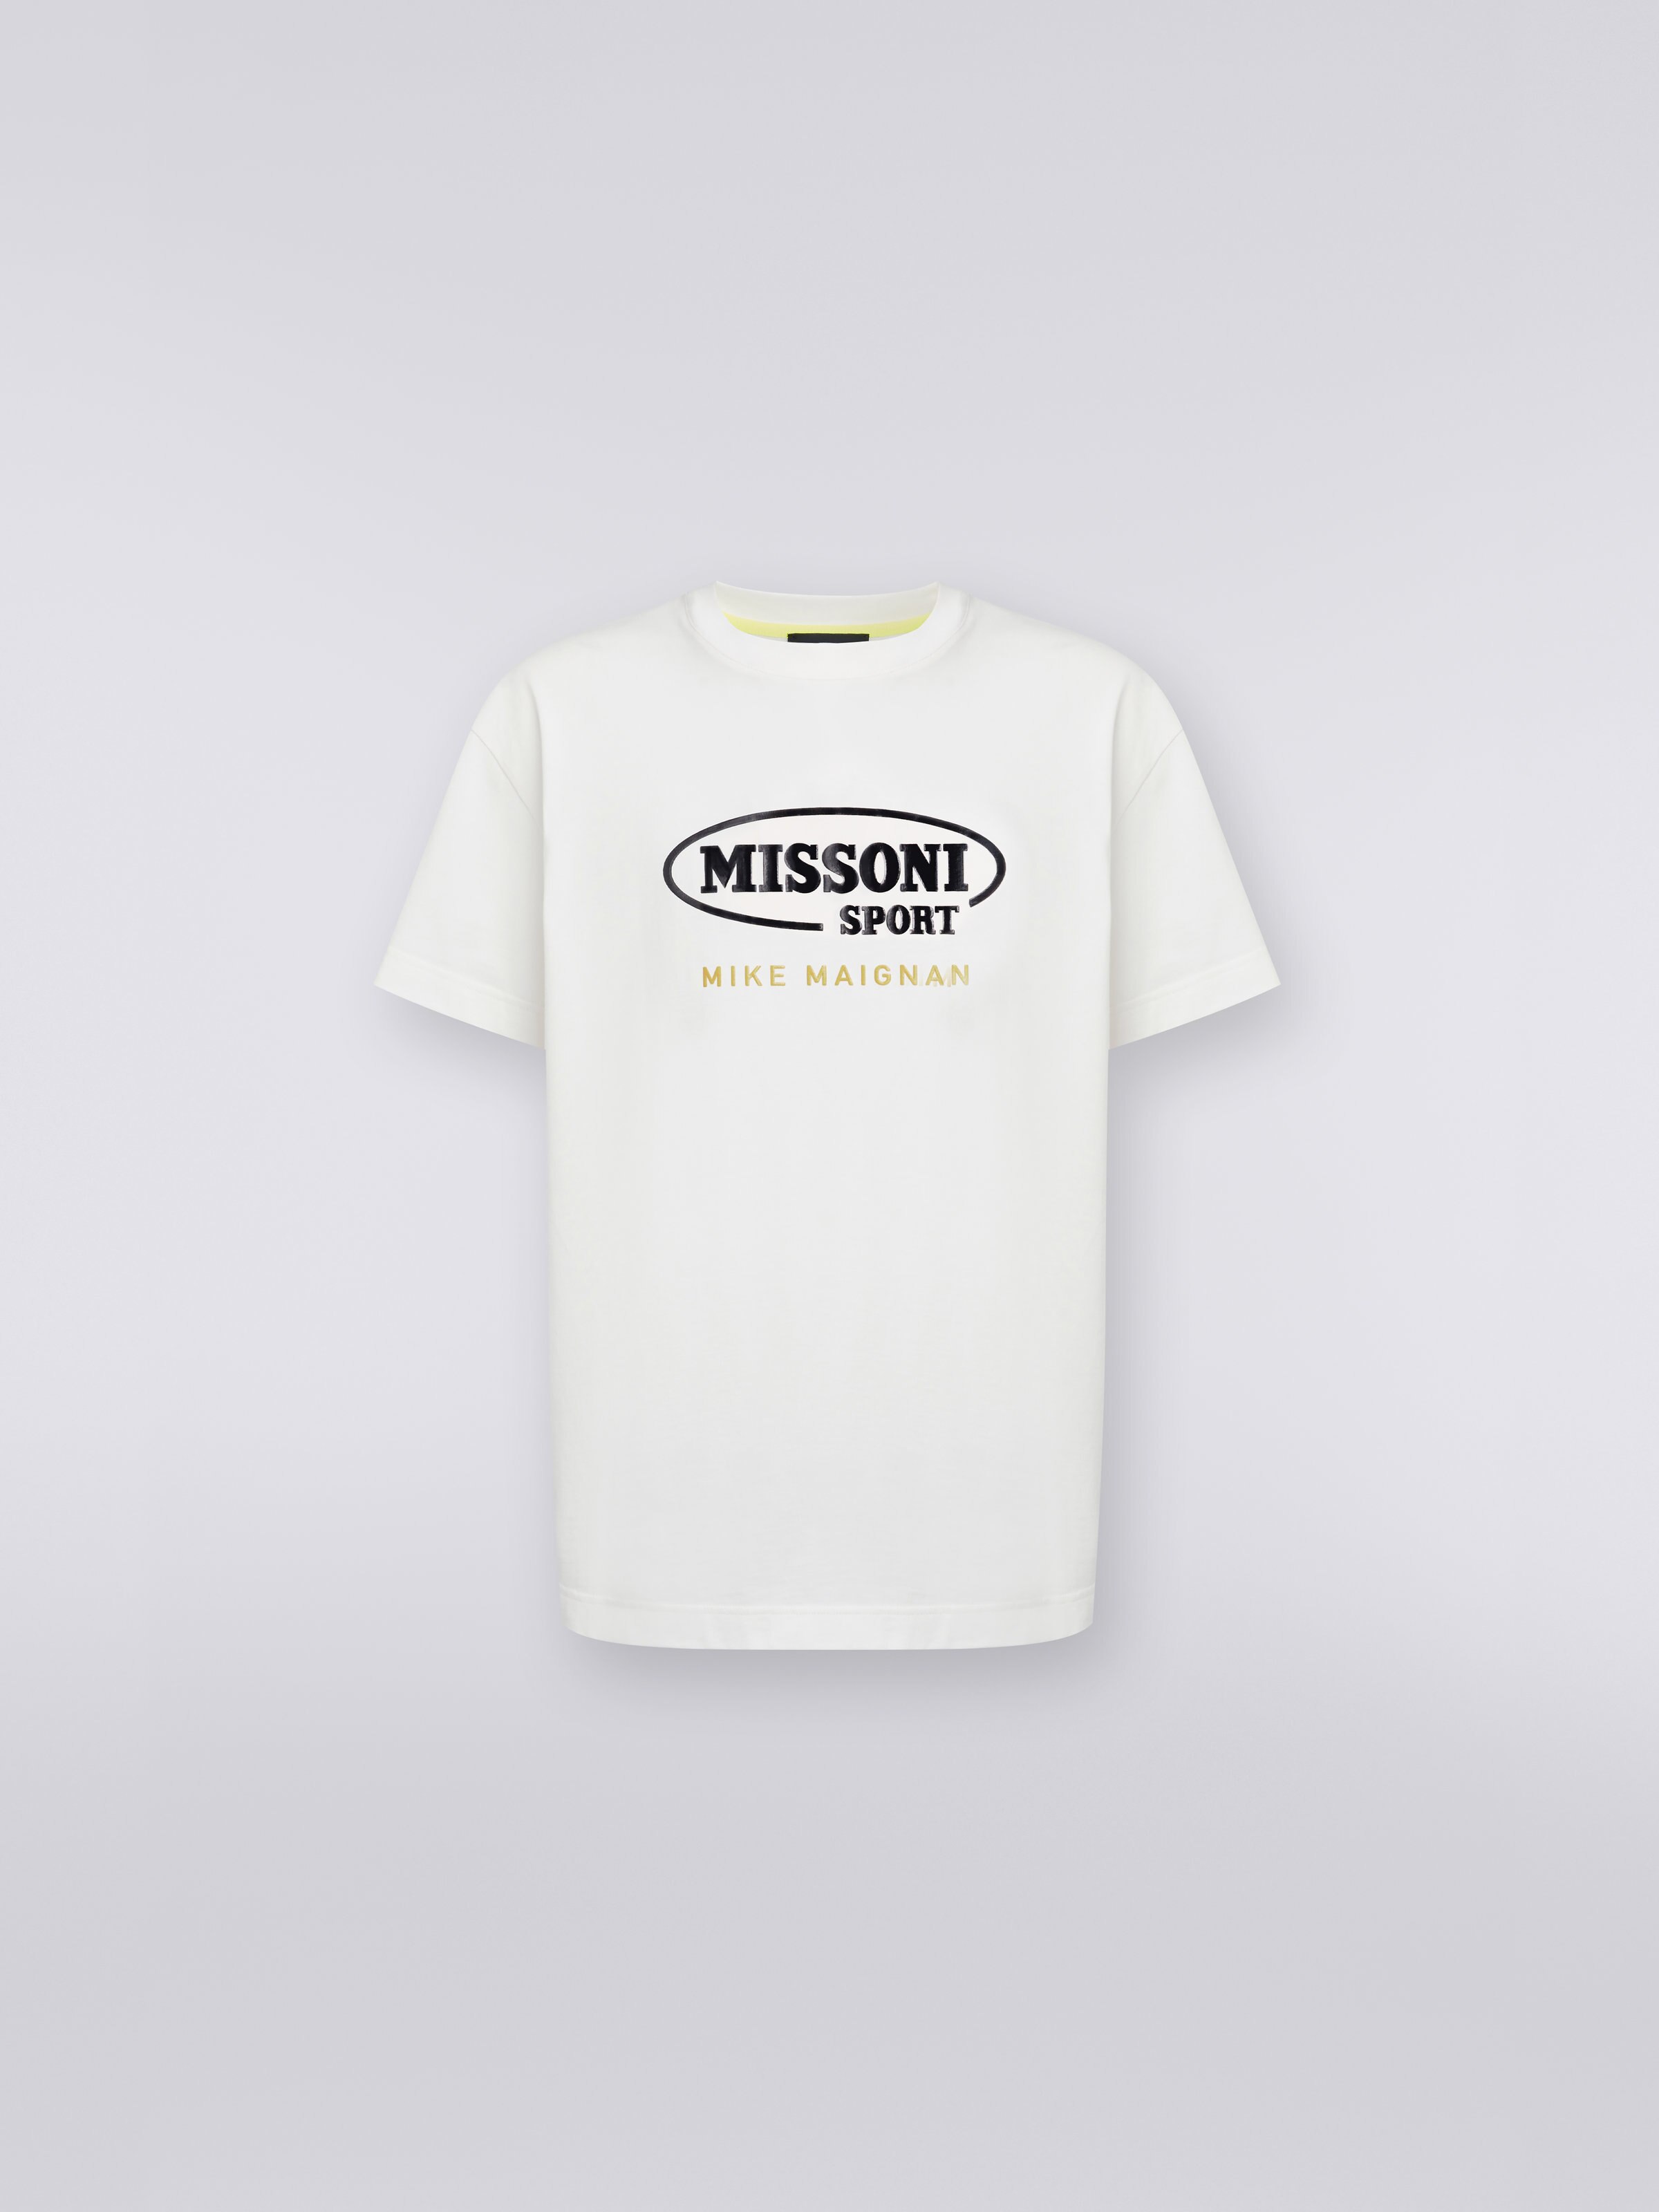 マイク・メニャンとのコラボレーションによるTシャツ ラウンドネック コットン ロゴ入り, ホワイト - 0